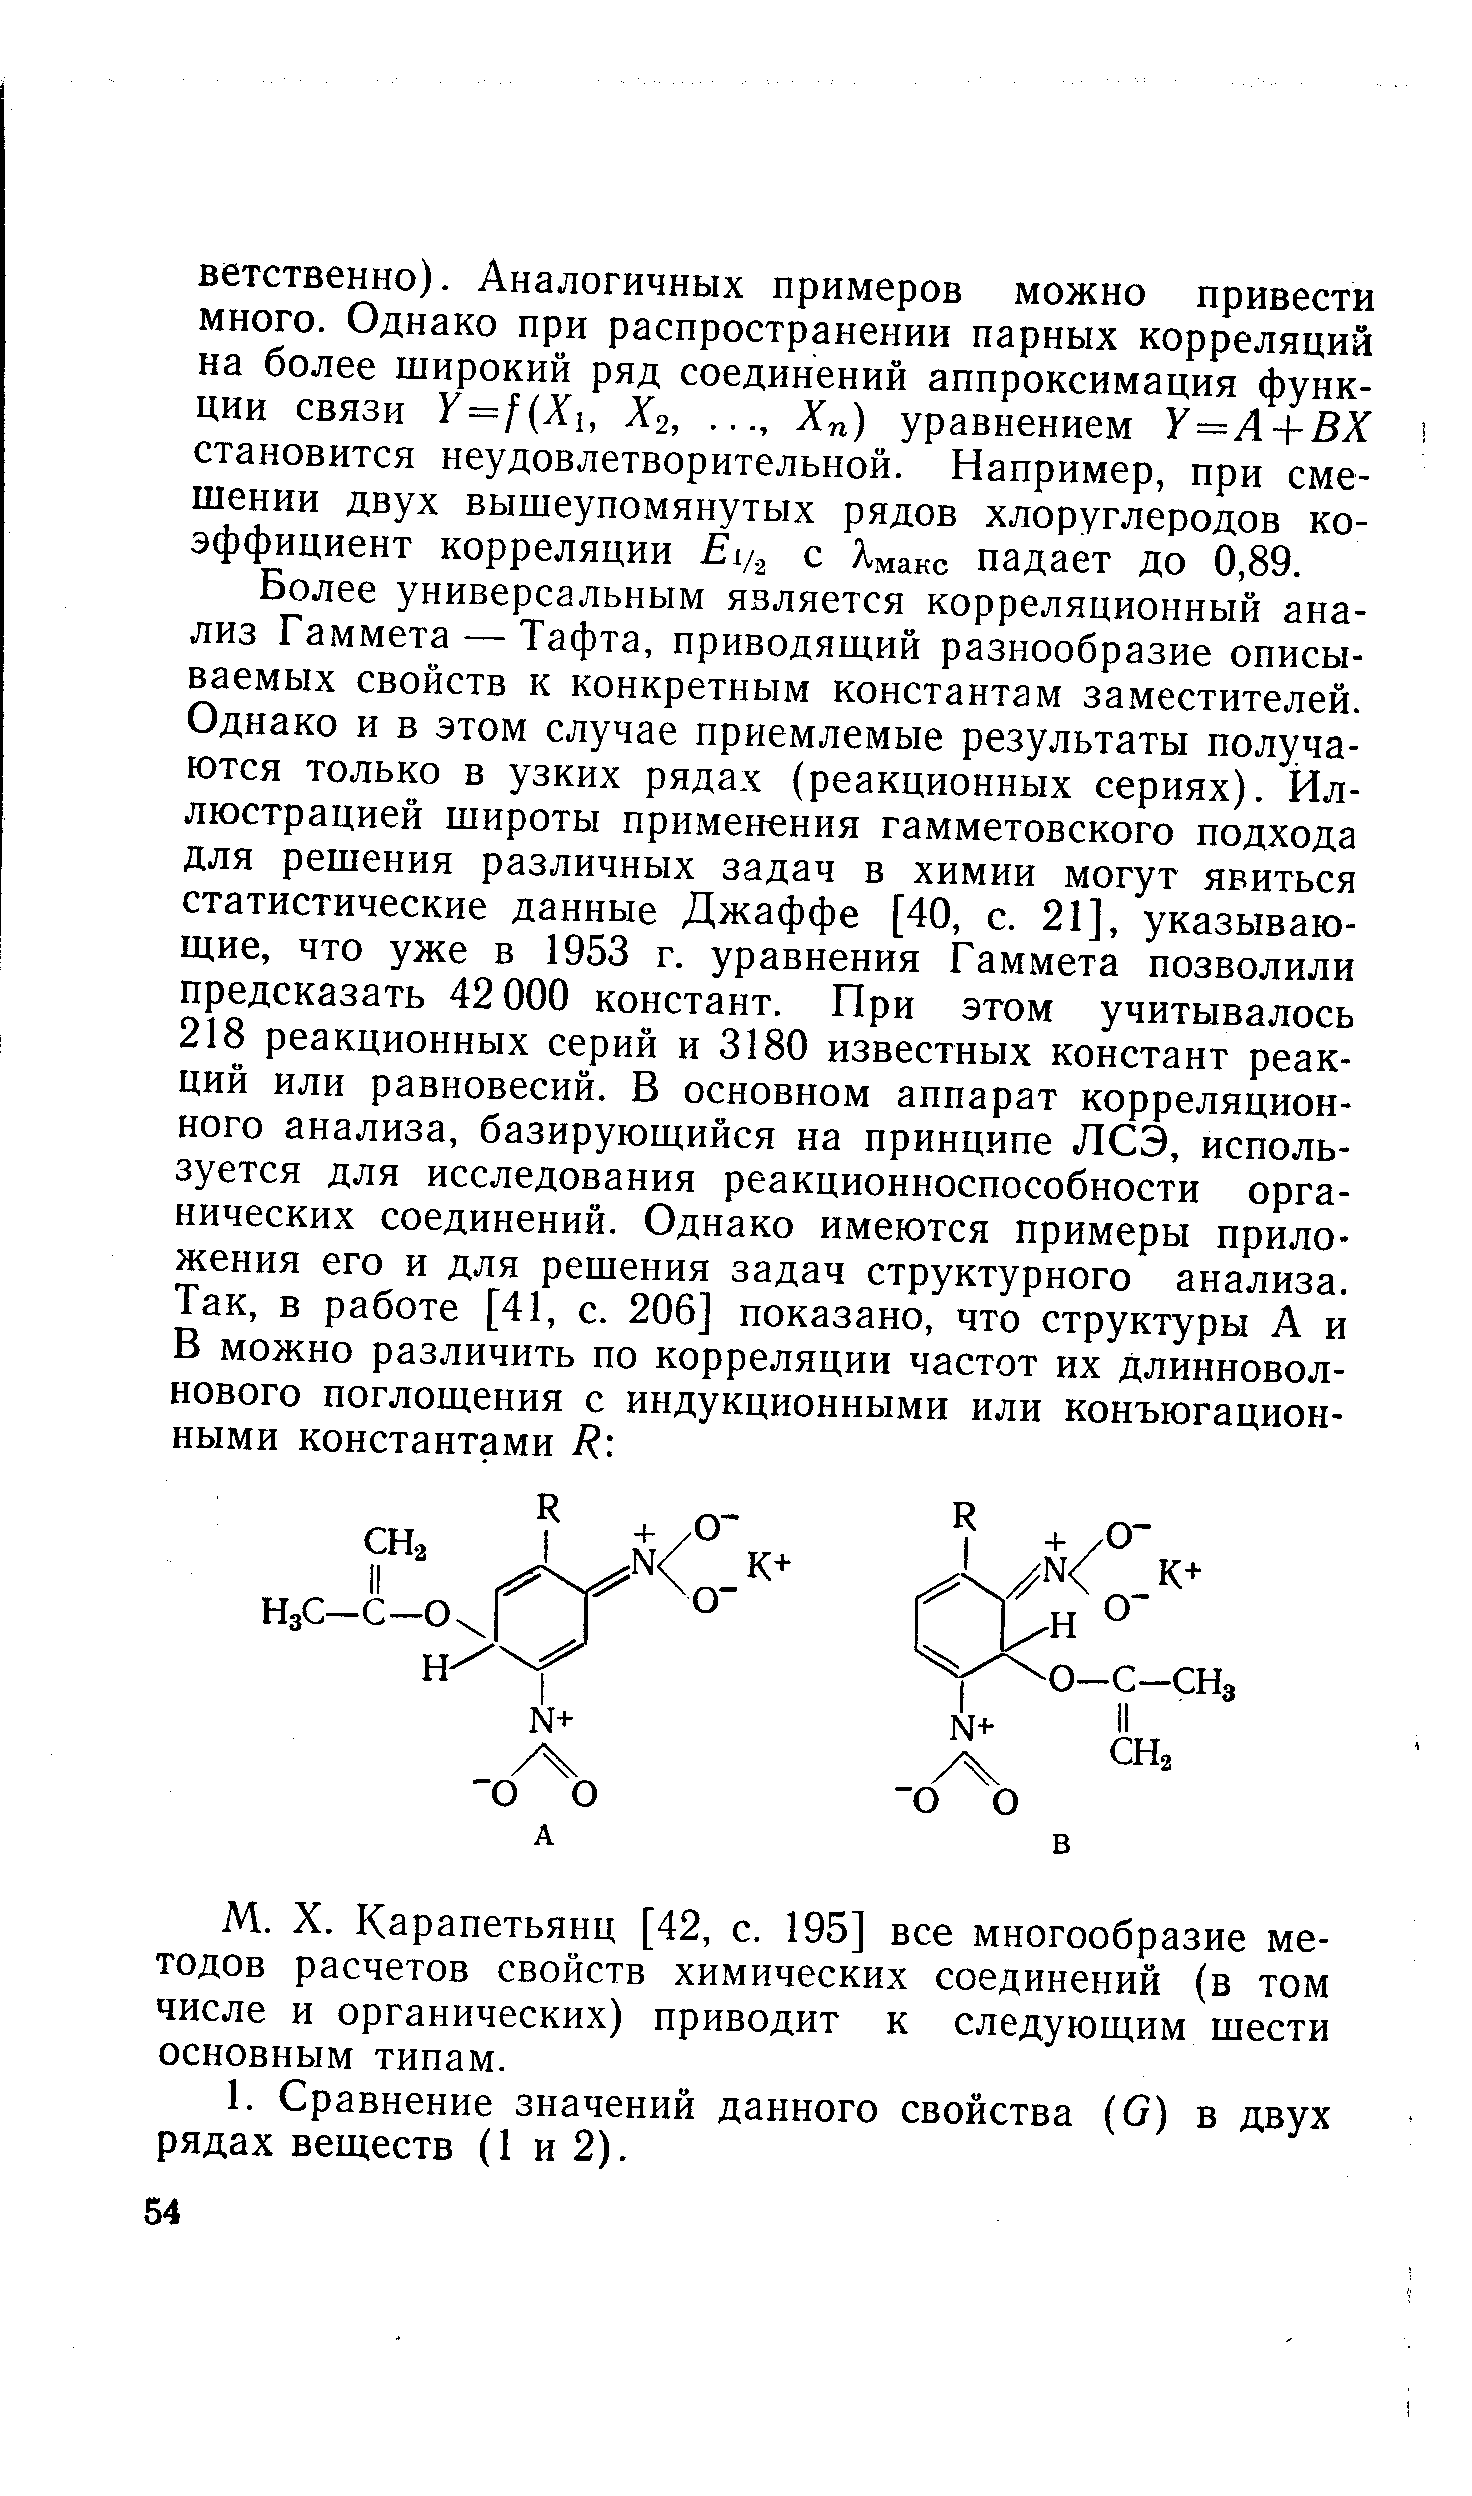 Карапетьянц [42, с. 195] все многообразие методов расчетов свойств химических соединений (в том числе и органических) приводит к следующим шести основным типам.